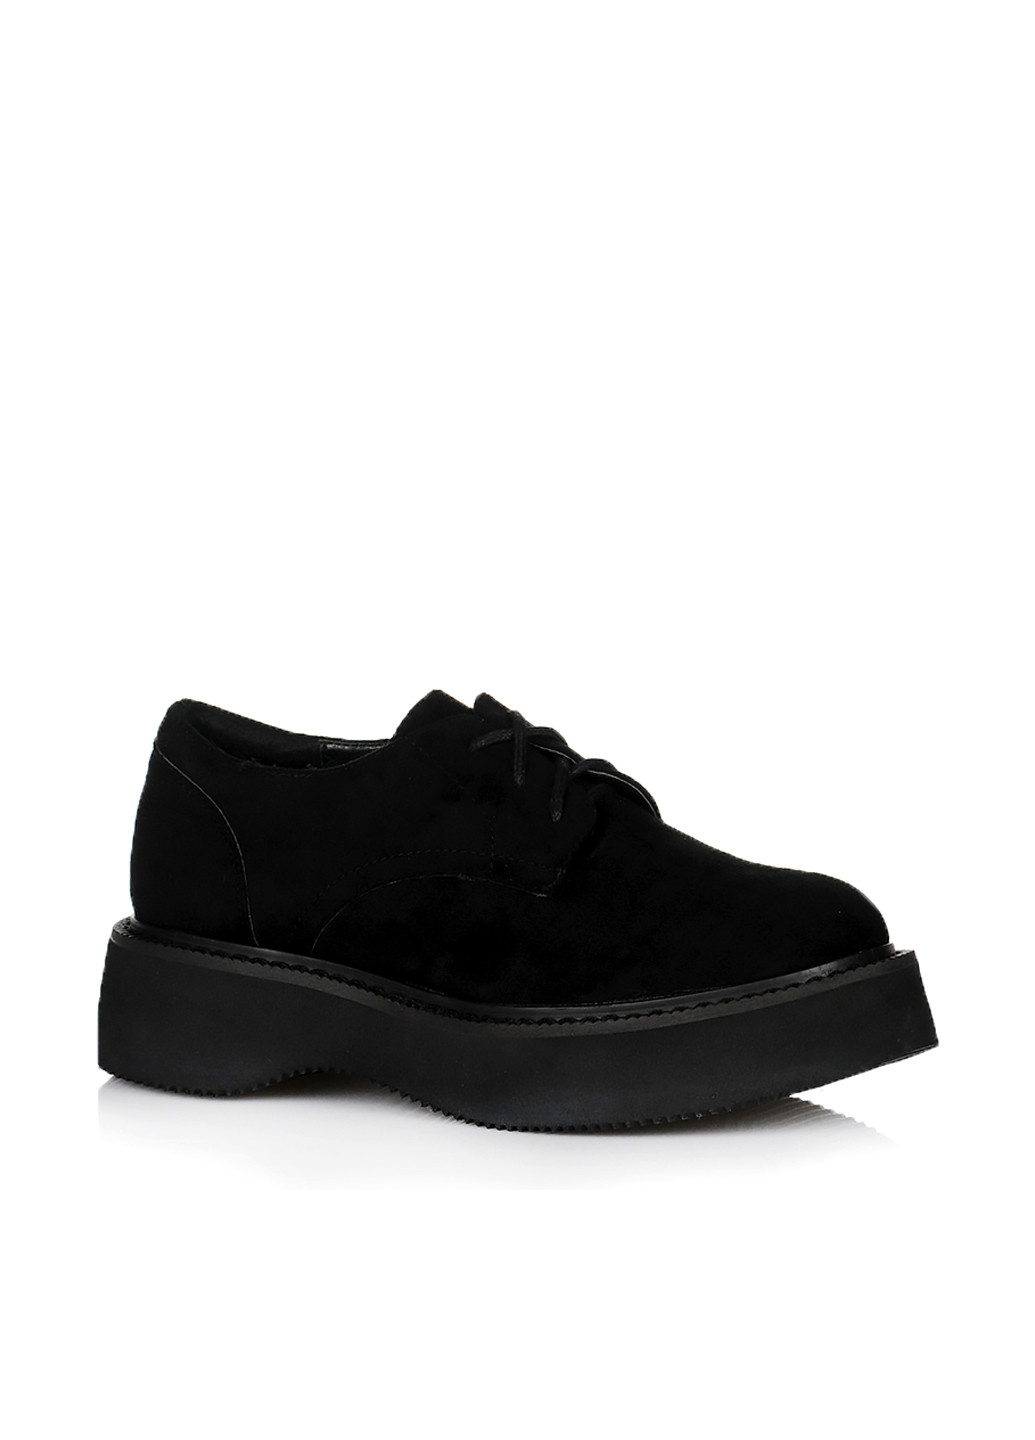 Туфлі Violeta однотонні чорні кежуали